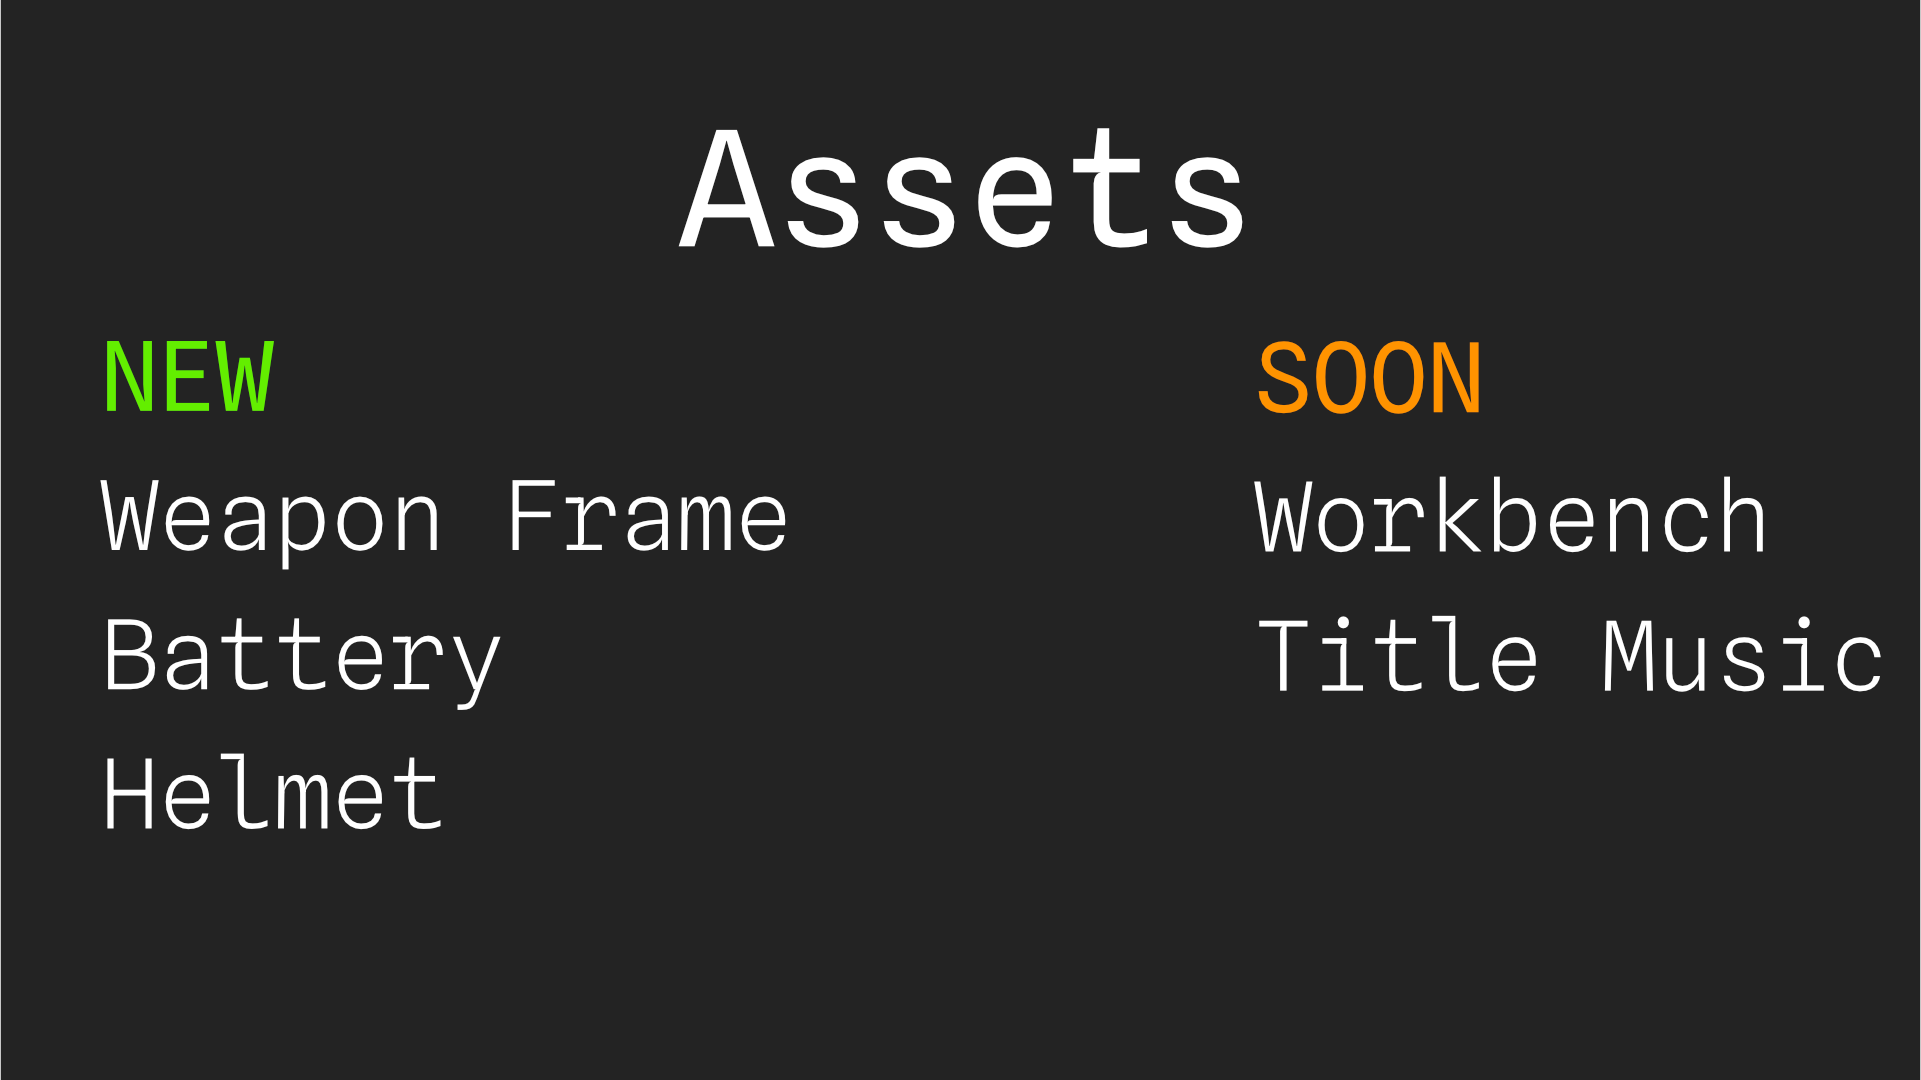 Asset Updates